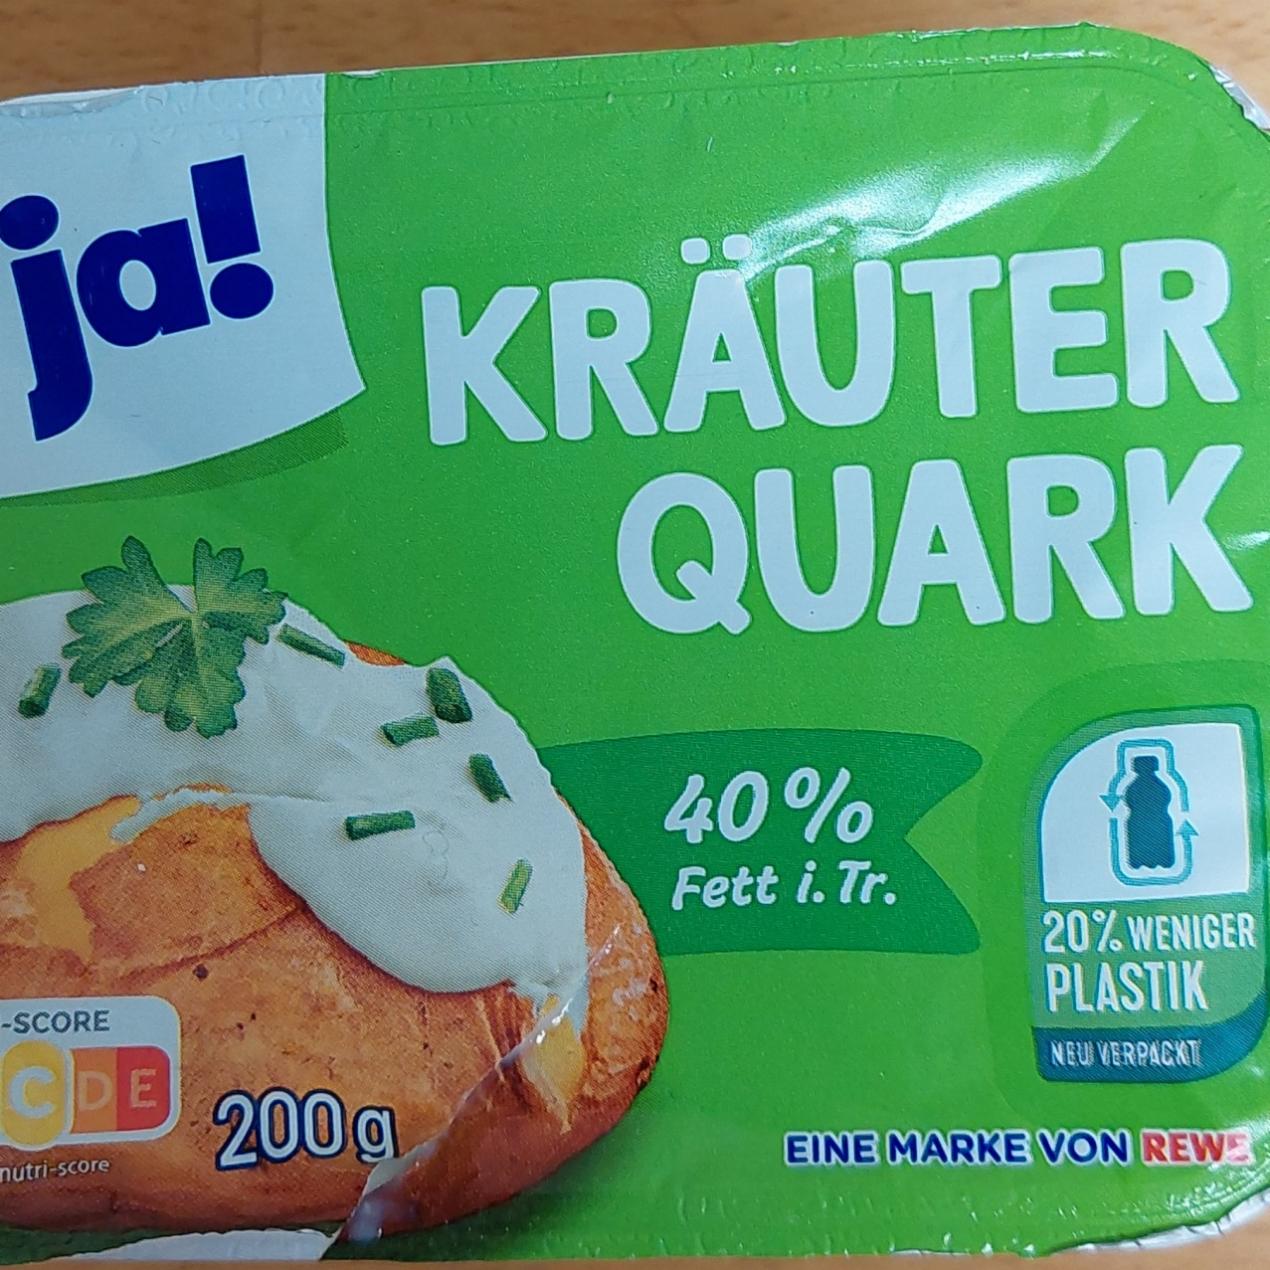 Фото - Kräuter quark 40% Ja!